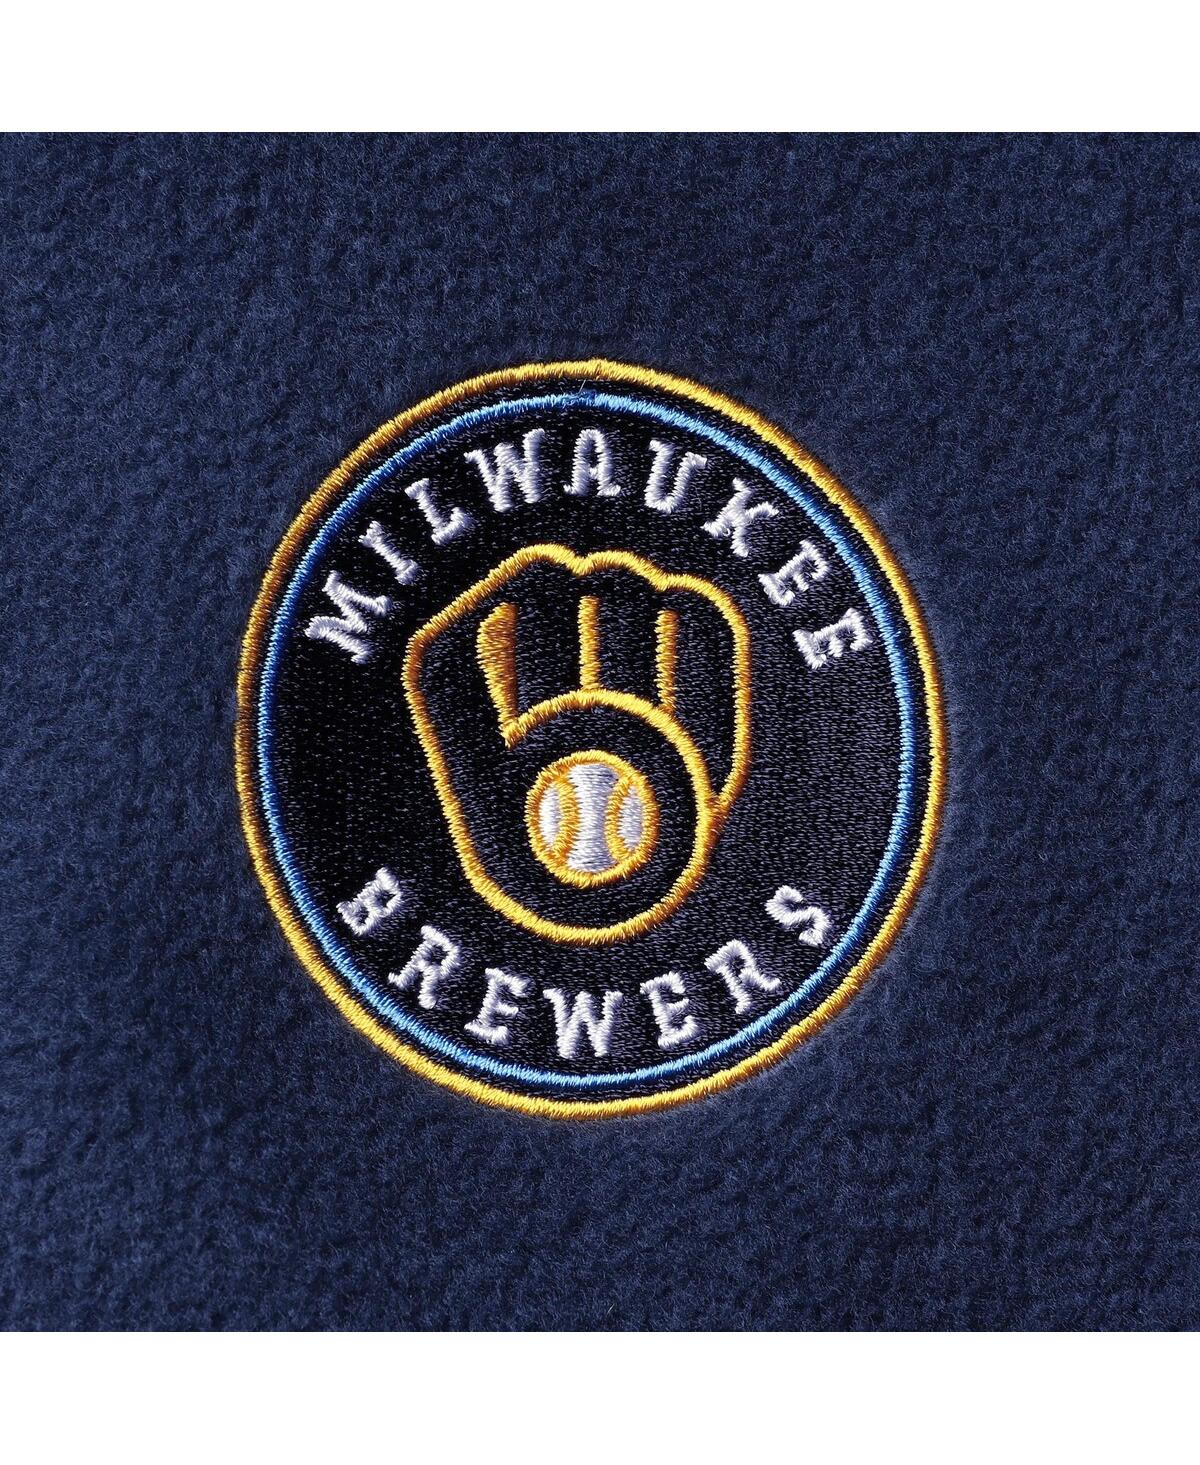 Shop Columbia Men's  Navy Milwaukee Brewers Steens Mountain Full-zip Jacket